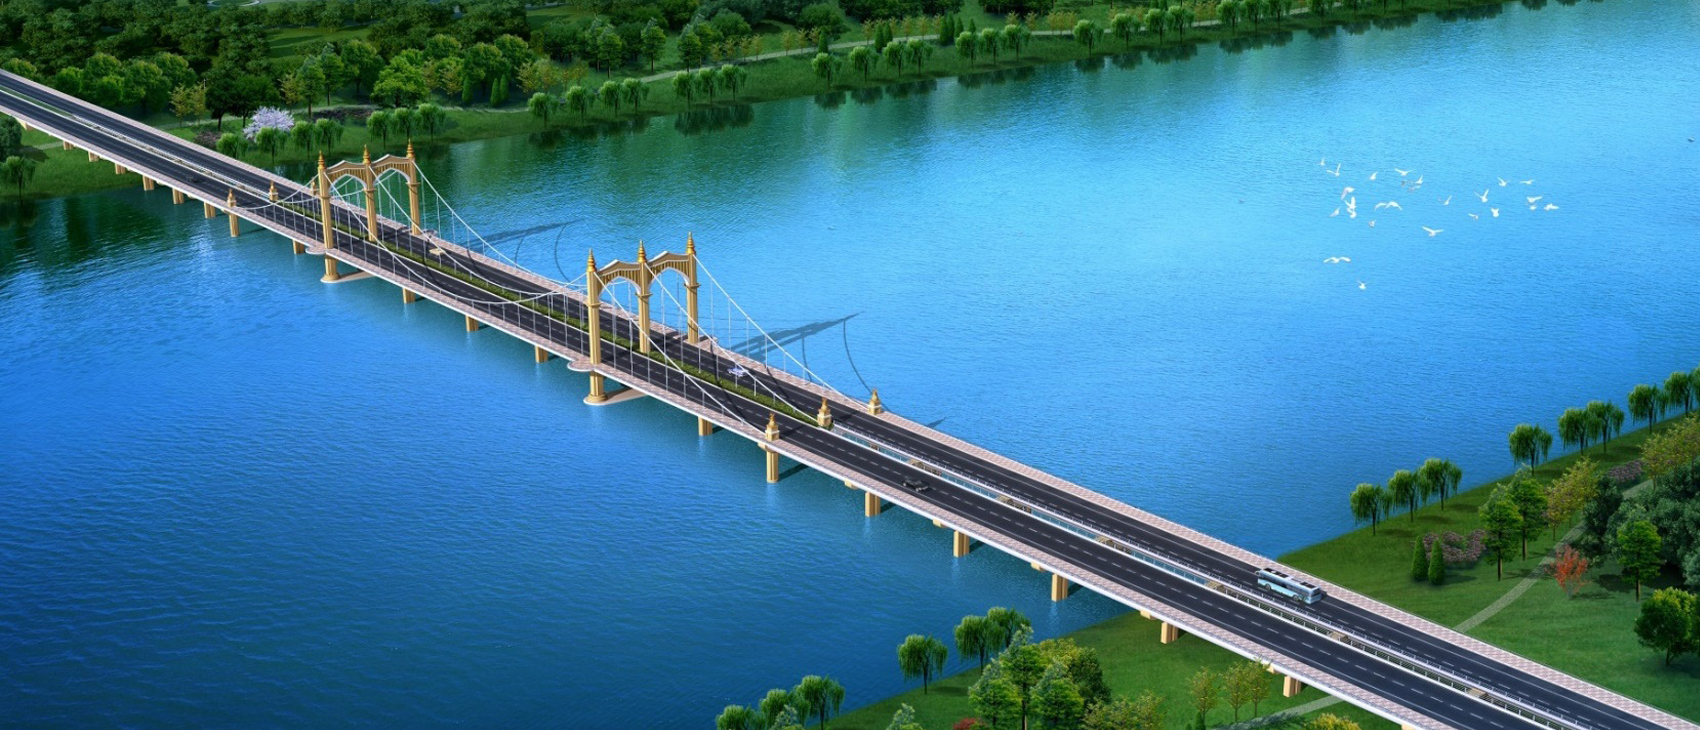 临沂市经济技术开发区沭河大桥新建工程